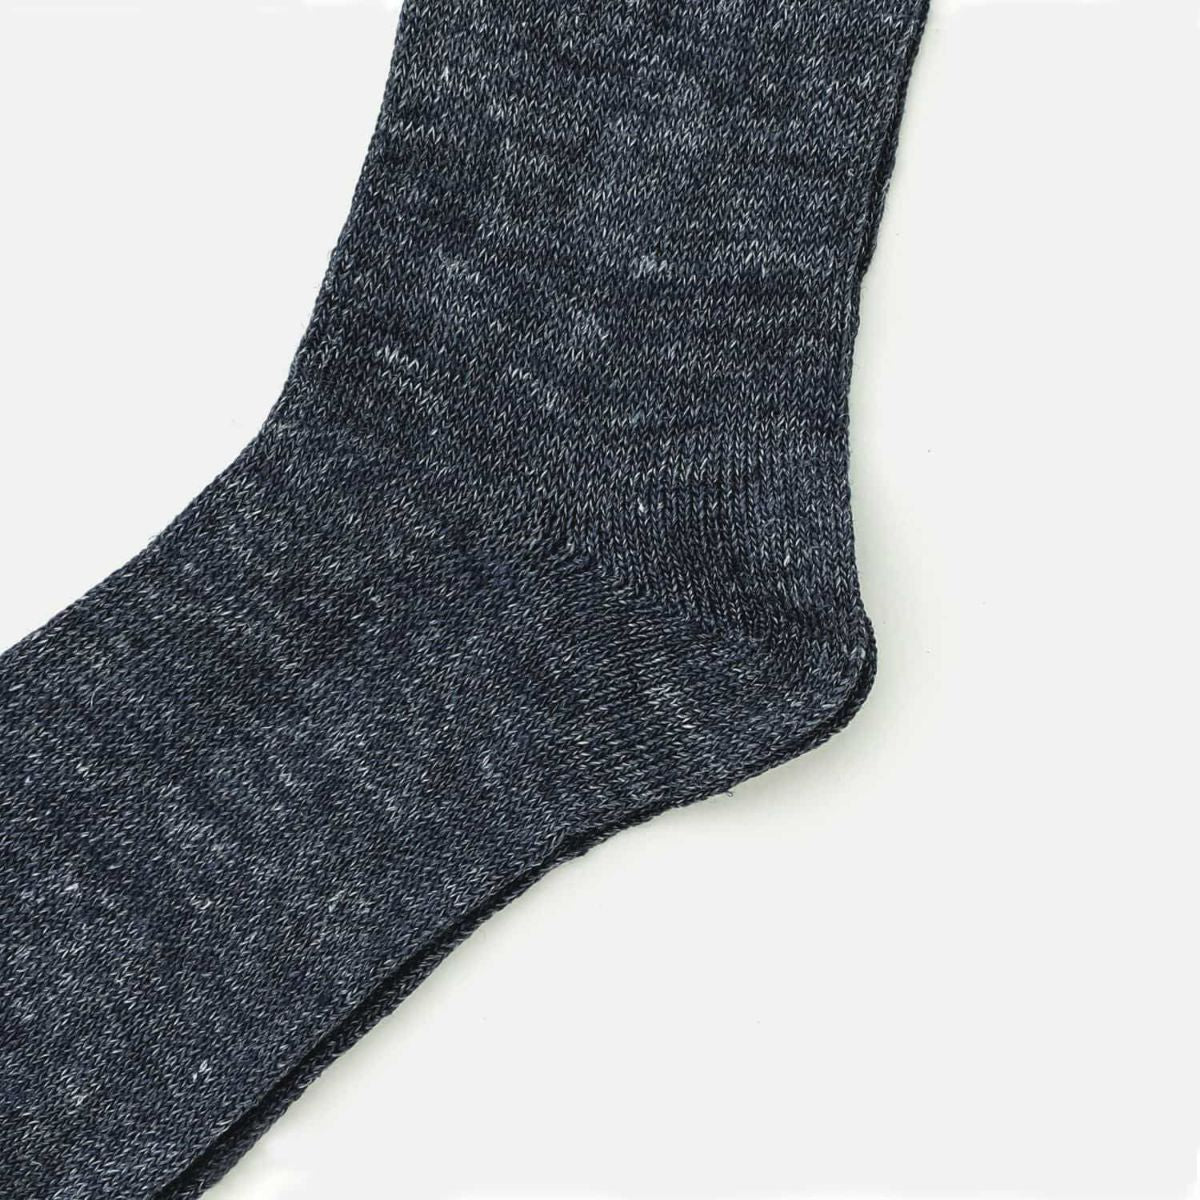 Obscure Socks/ Men’s/ ILEX